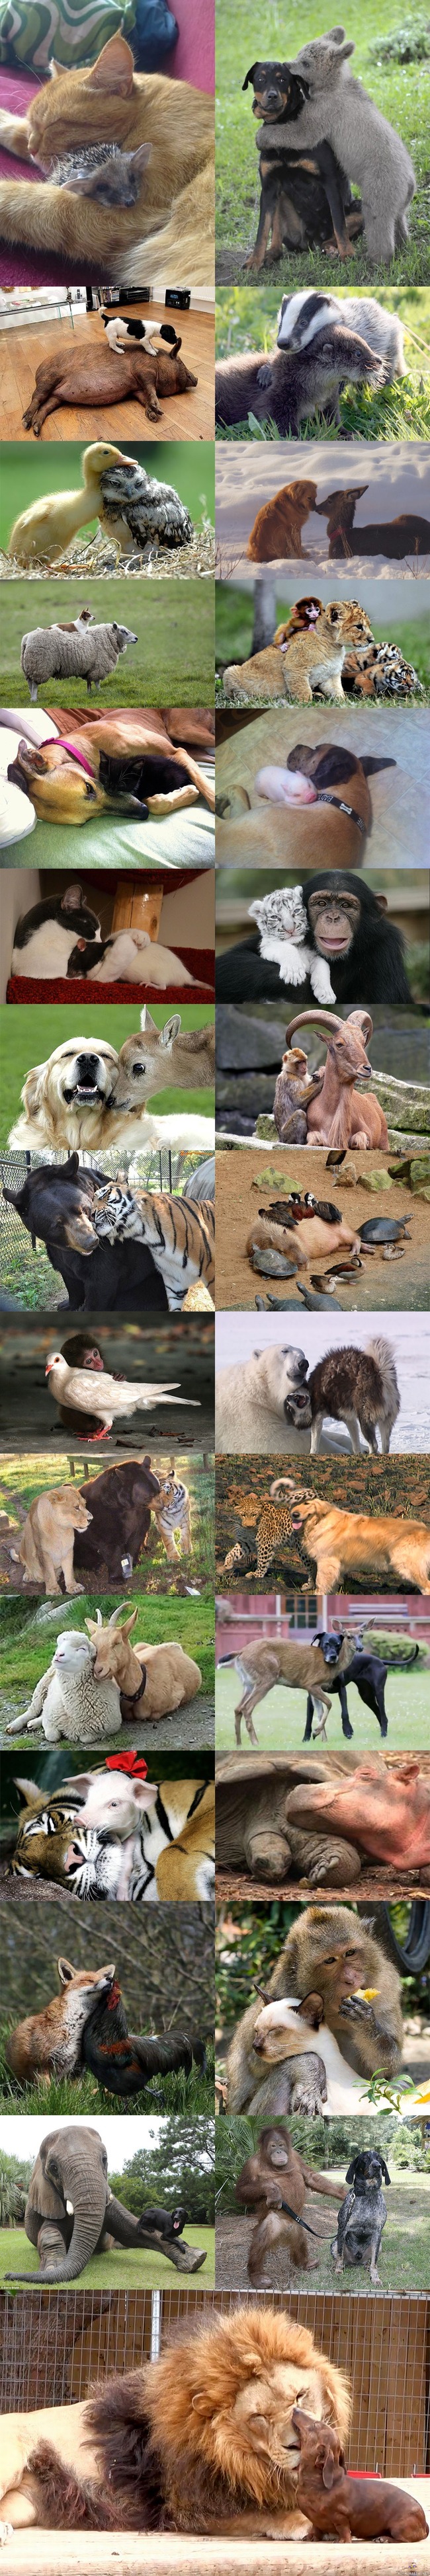 Eläinystävät